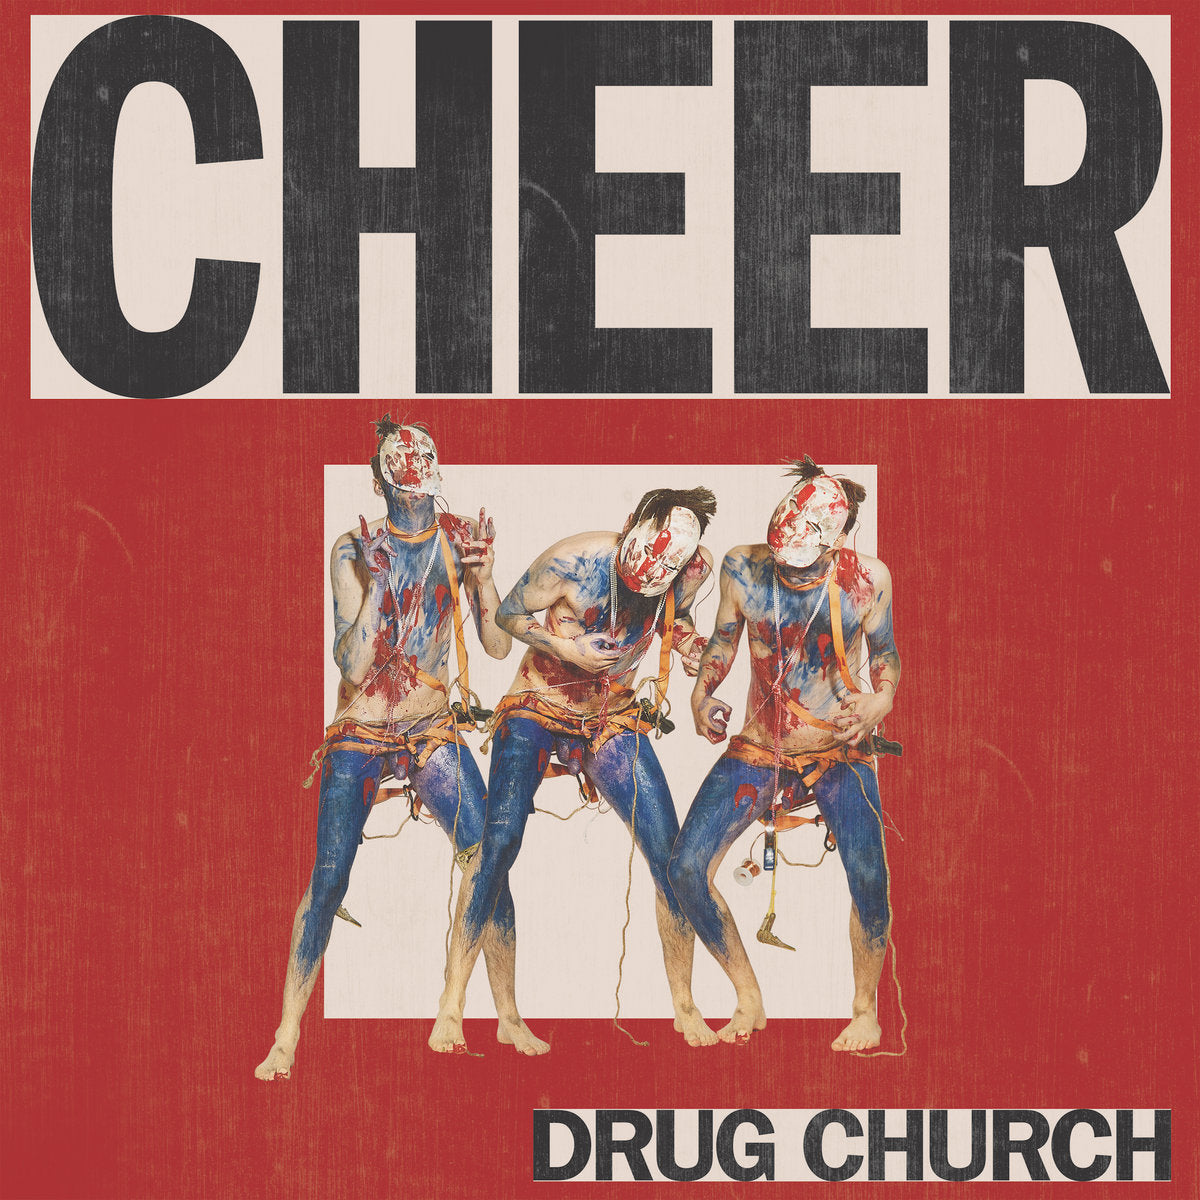 DRUG CHURCH "Cheer" LP